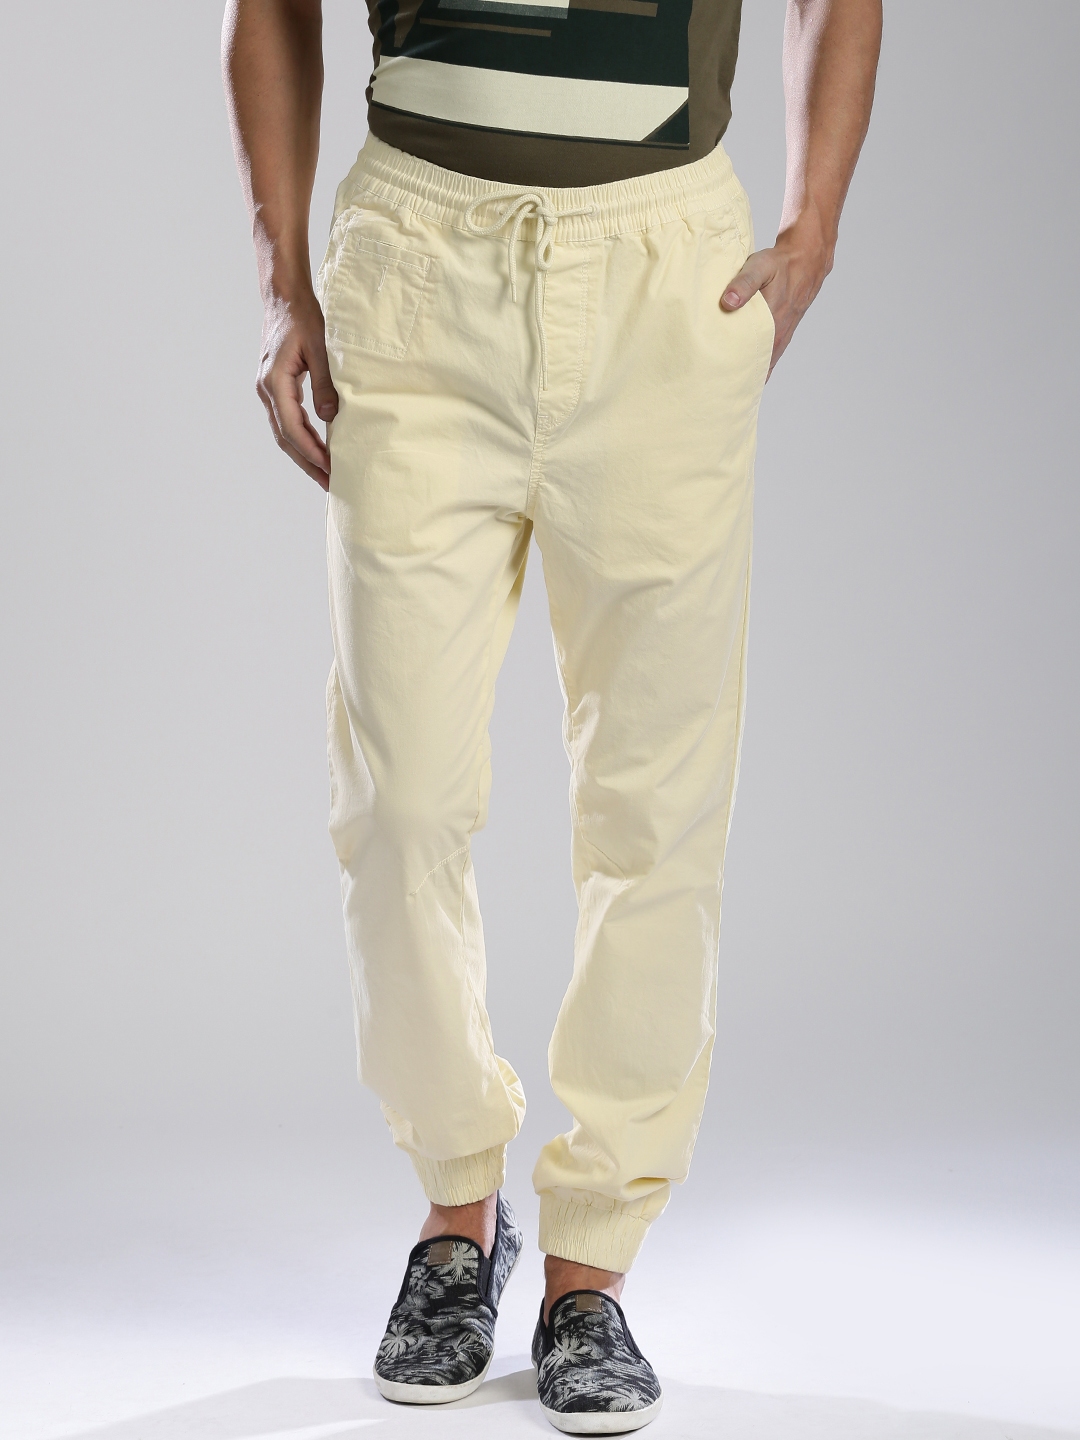 Buy Grey Trousers  Pants for Men by Uniquest Online  Ajiocom